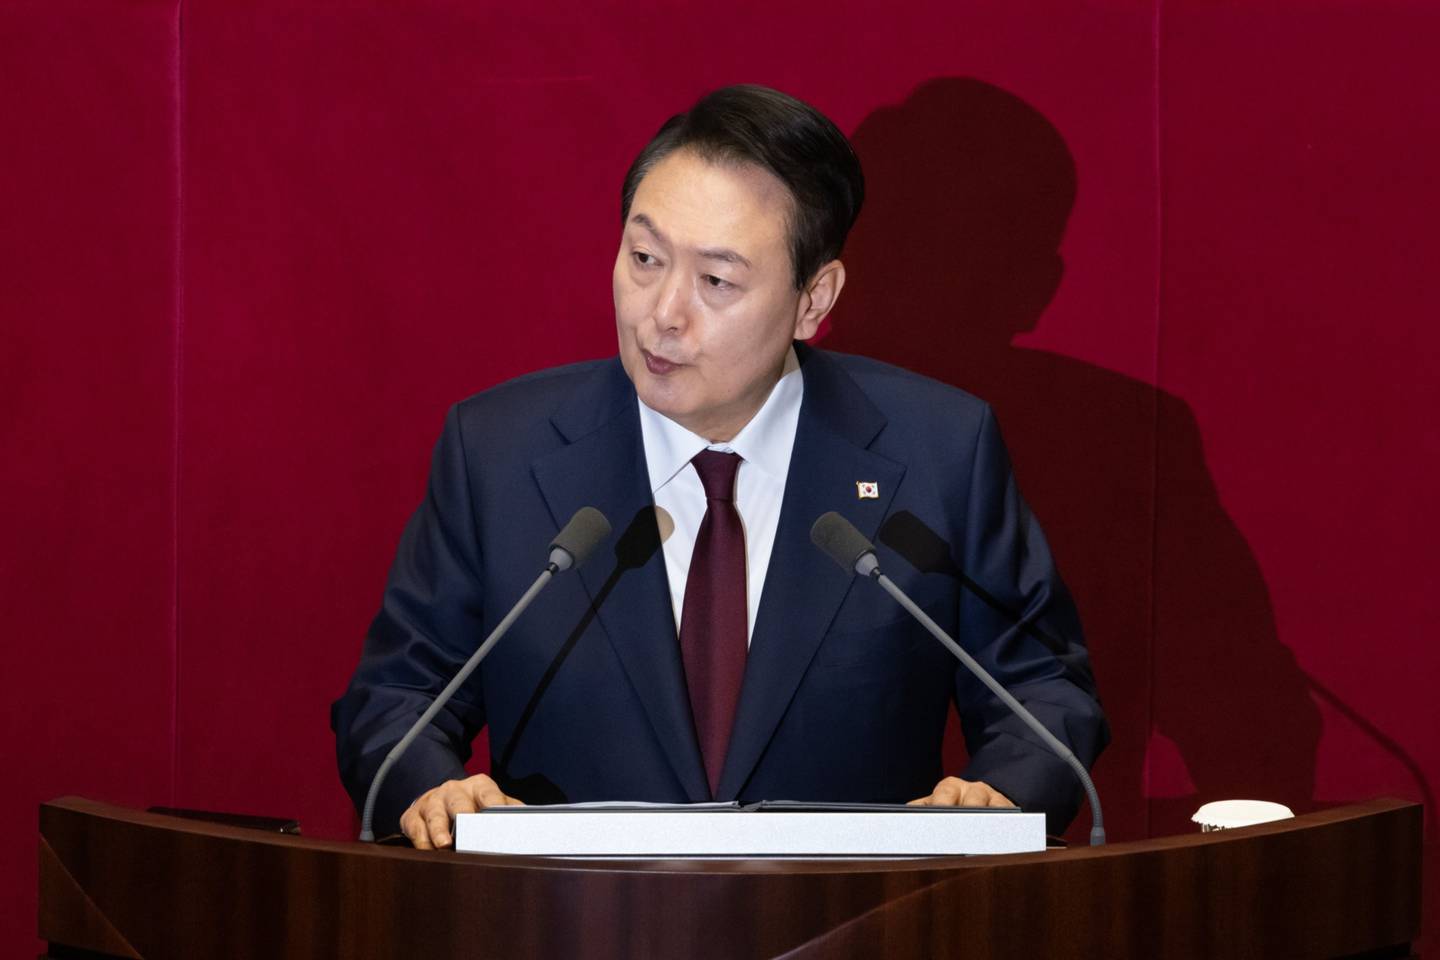 El Presidente surcoreano Yoon Suk Yeol pronuncia un discurso.